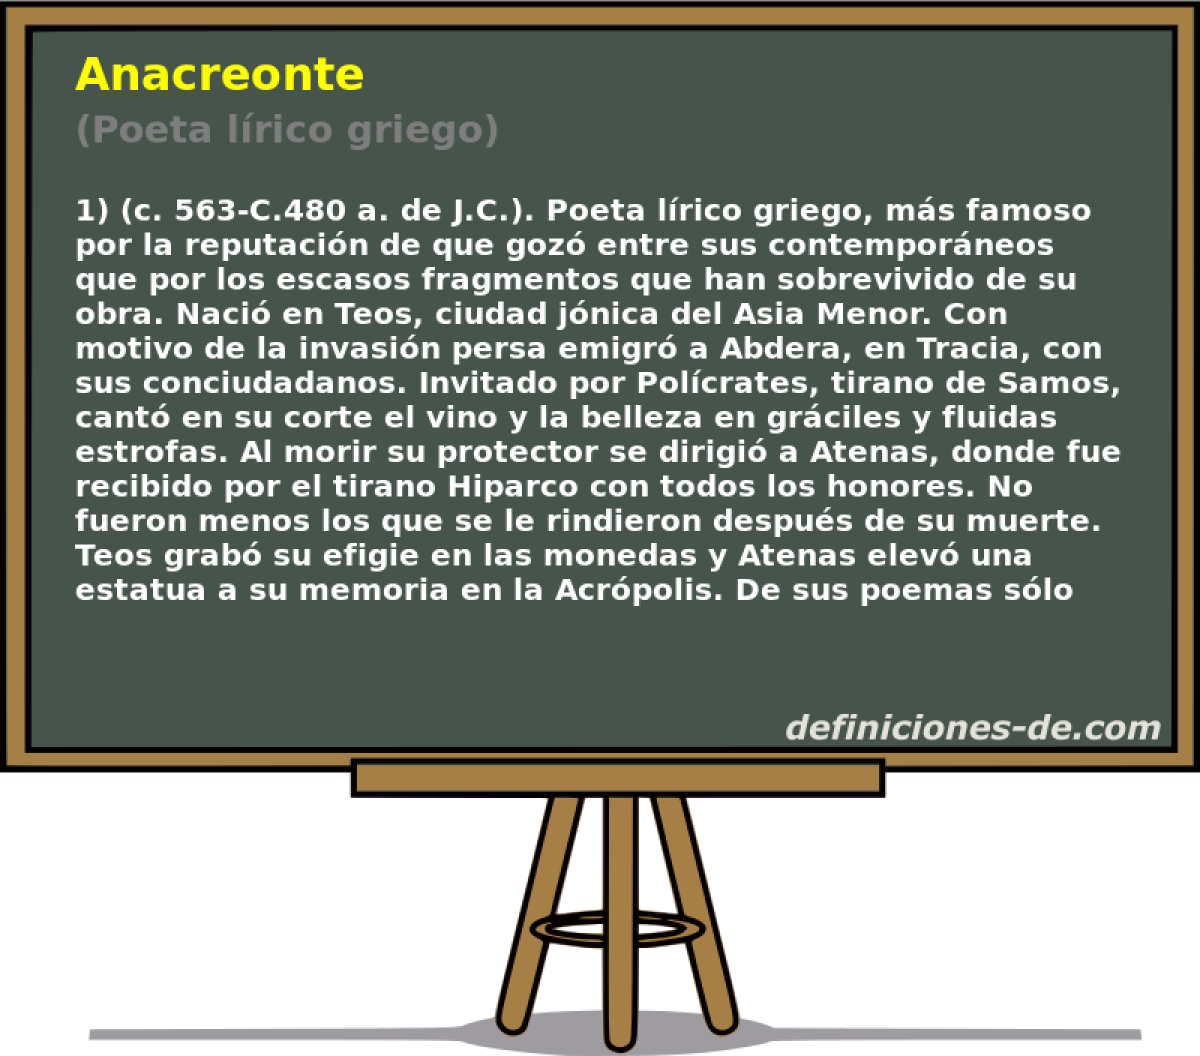 Anacreonte (Poeta lrico griego)